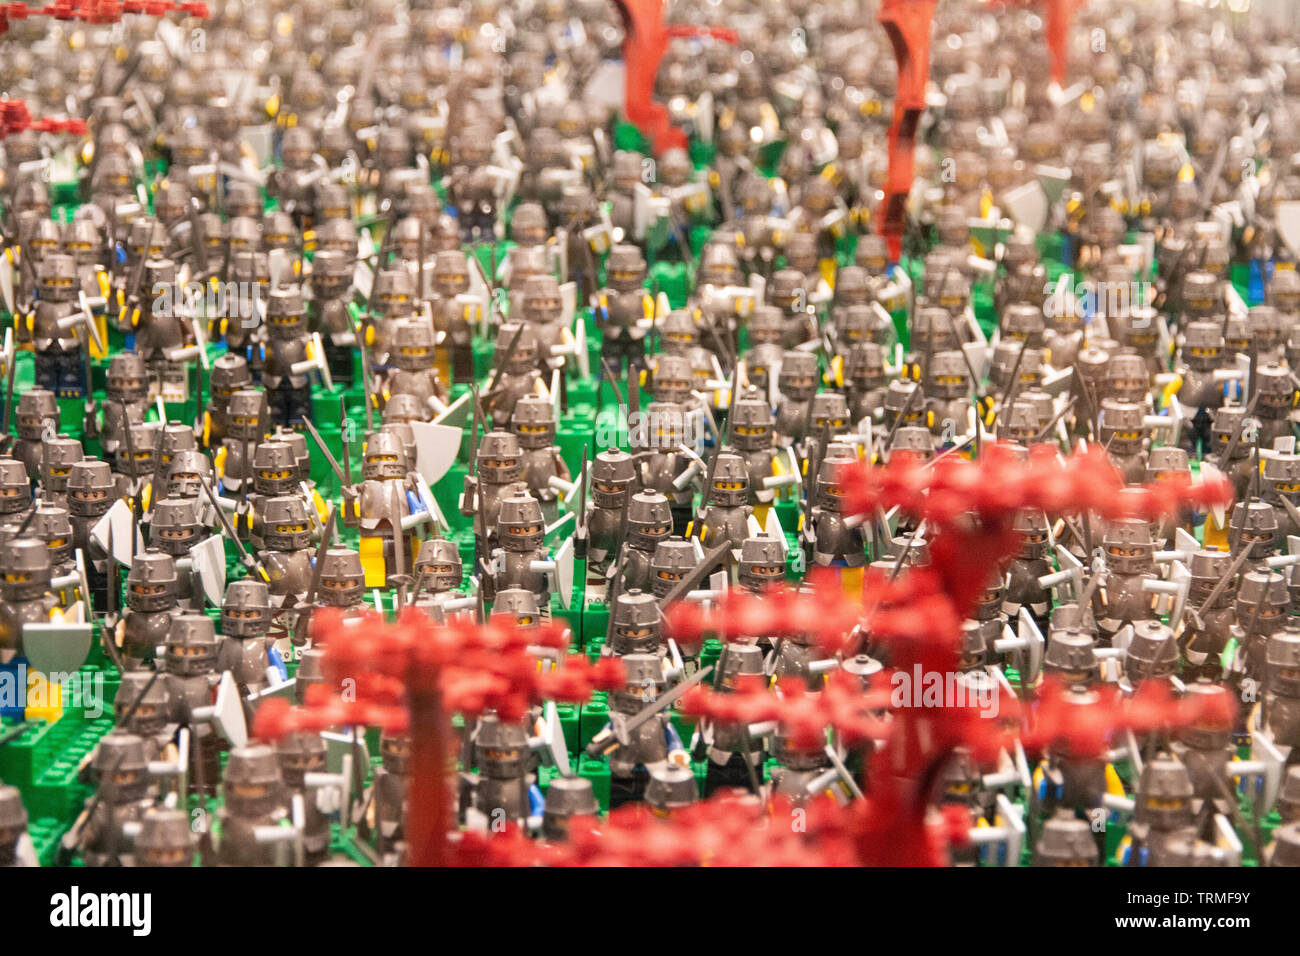 Blick von einer sehr großen LEGO Minifigur Armee Diorama. LEGO Ausstellung 2019, Budapest, Ungarn. Stockfoto